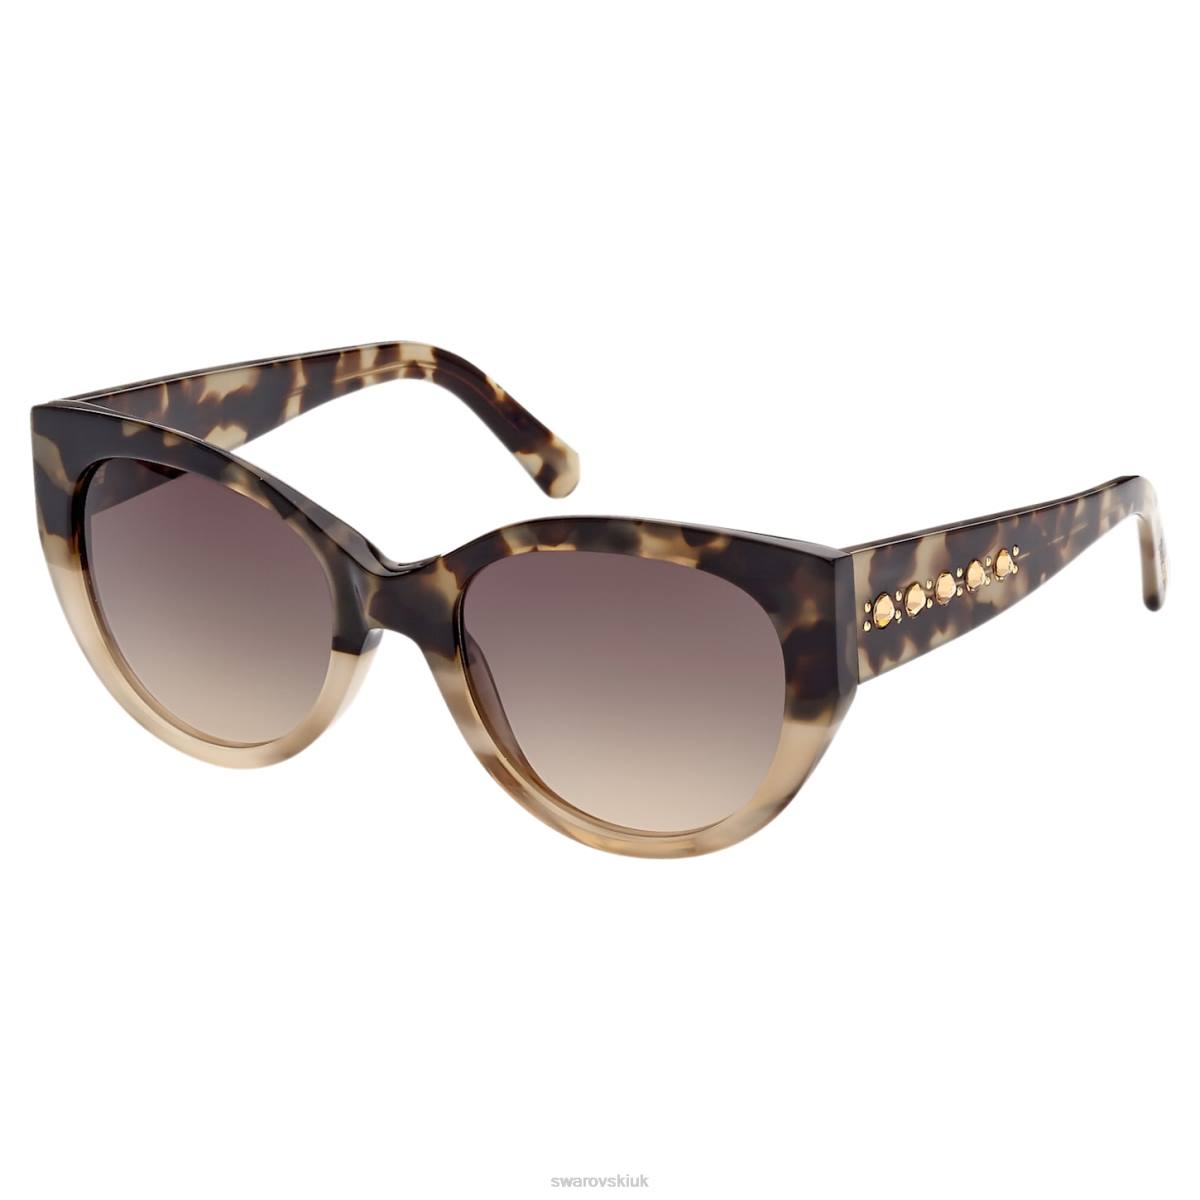 Accessories Swarovski Sunglasses Cat-eye shape, SK0372 56F, Multicolored 48JX1435